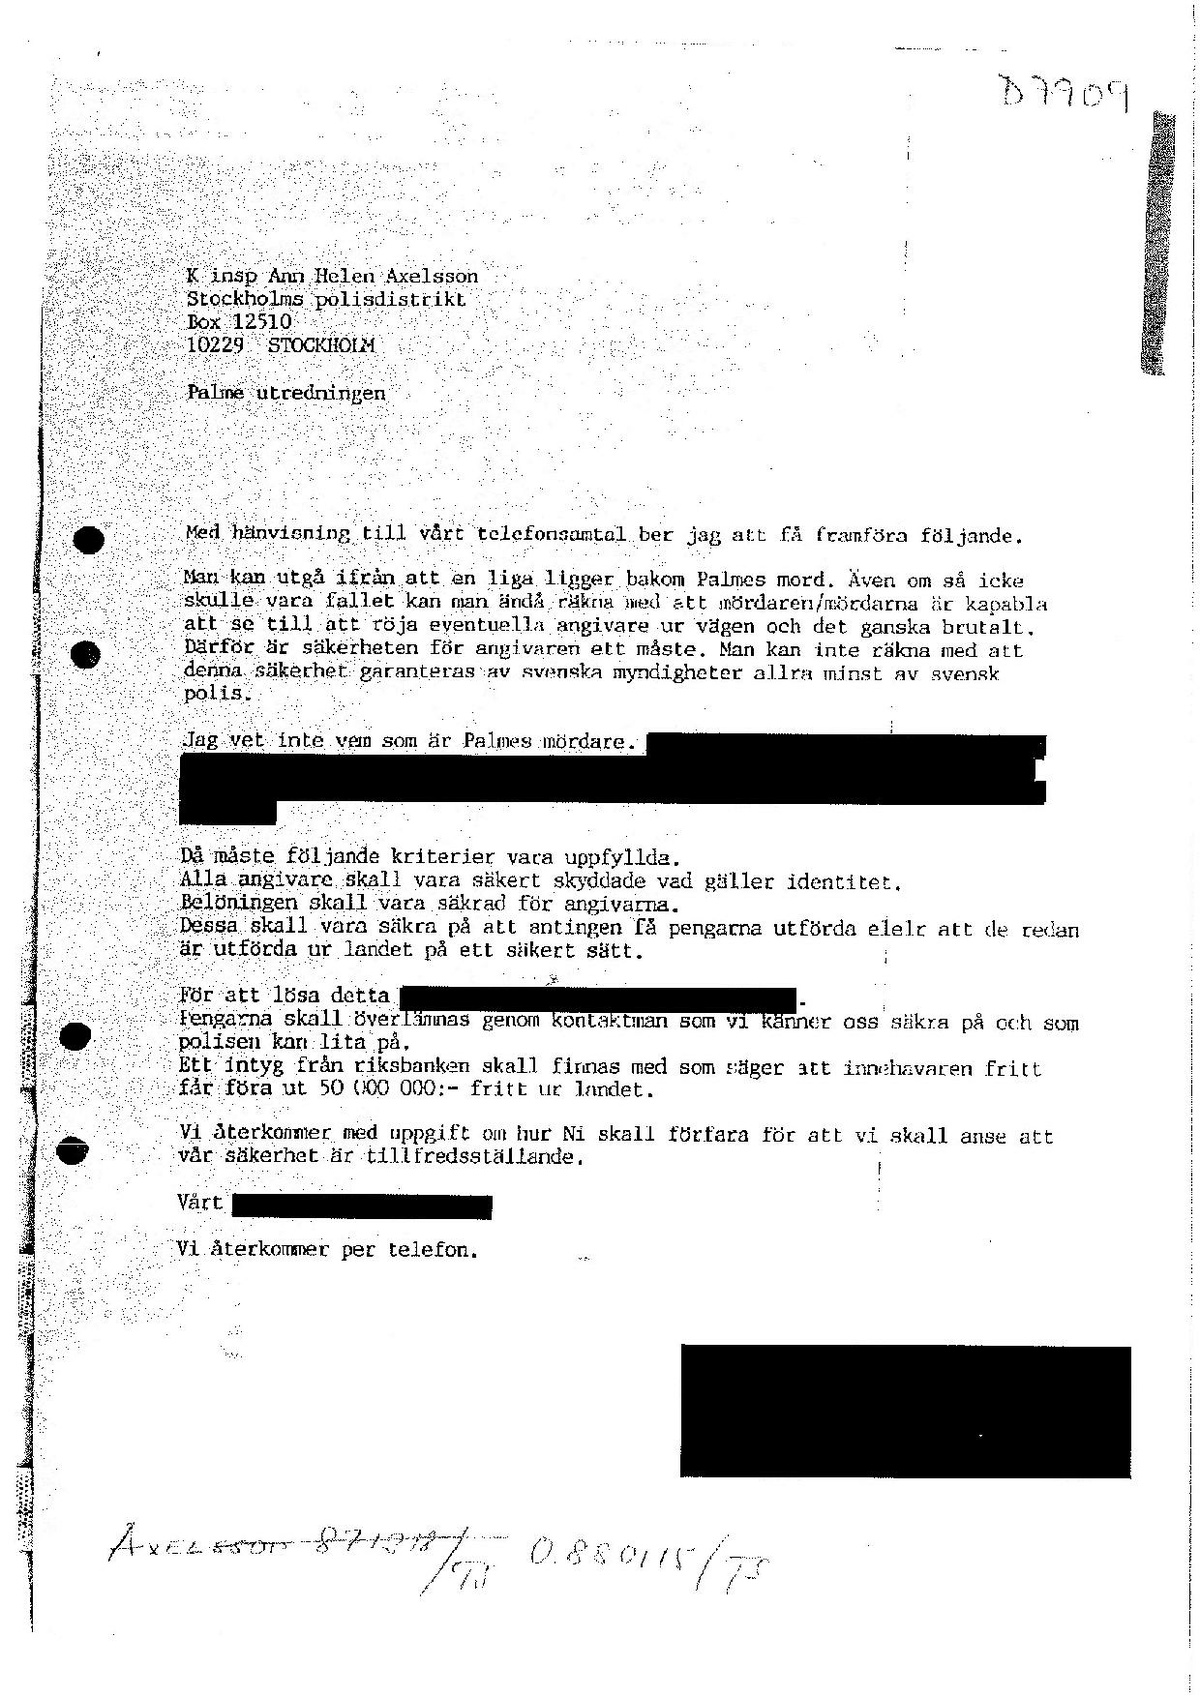 Pol-1987-12-18 D7909-00 Telefonsamtal från brevskrivare.pdf